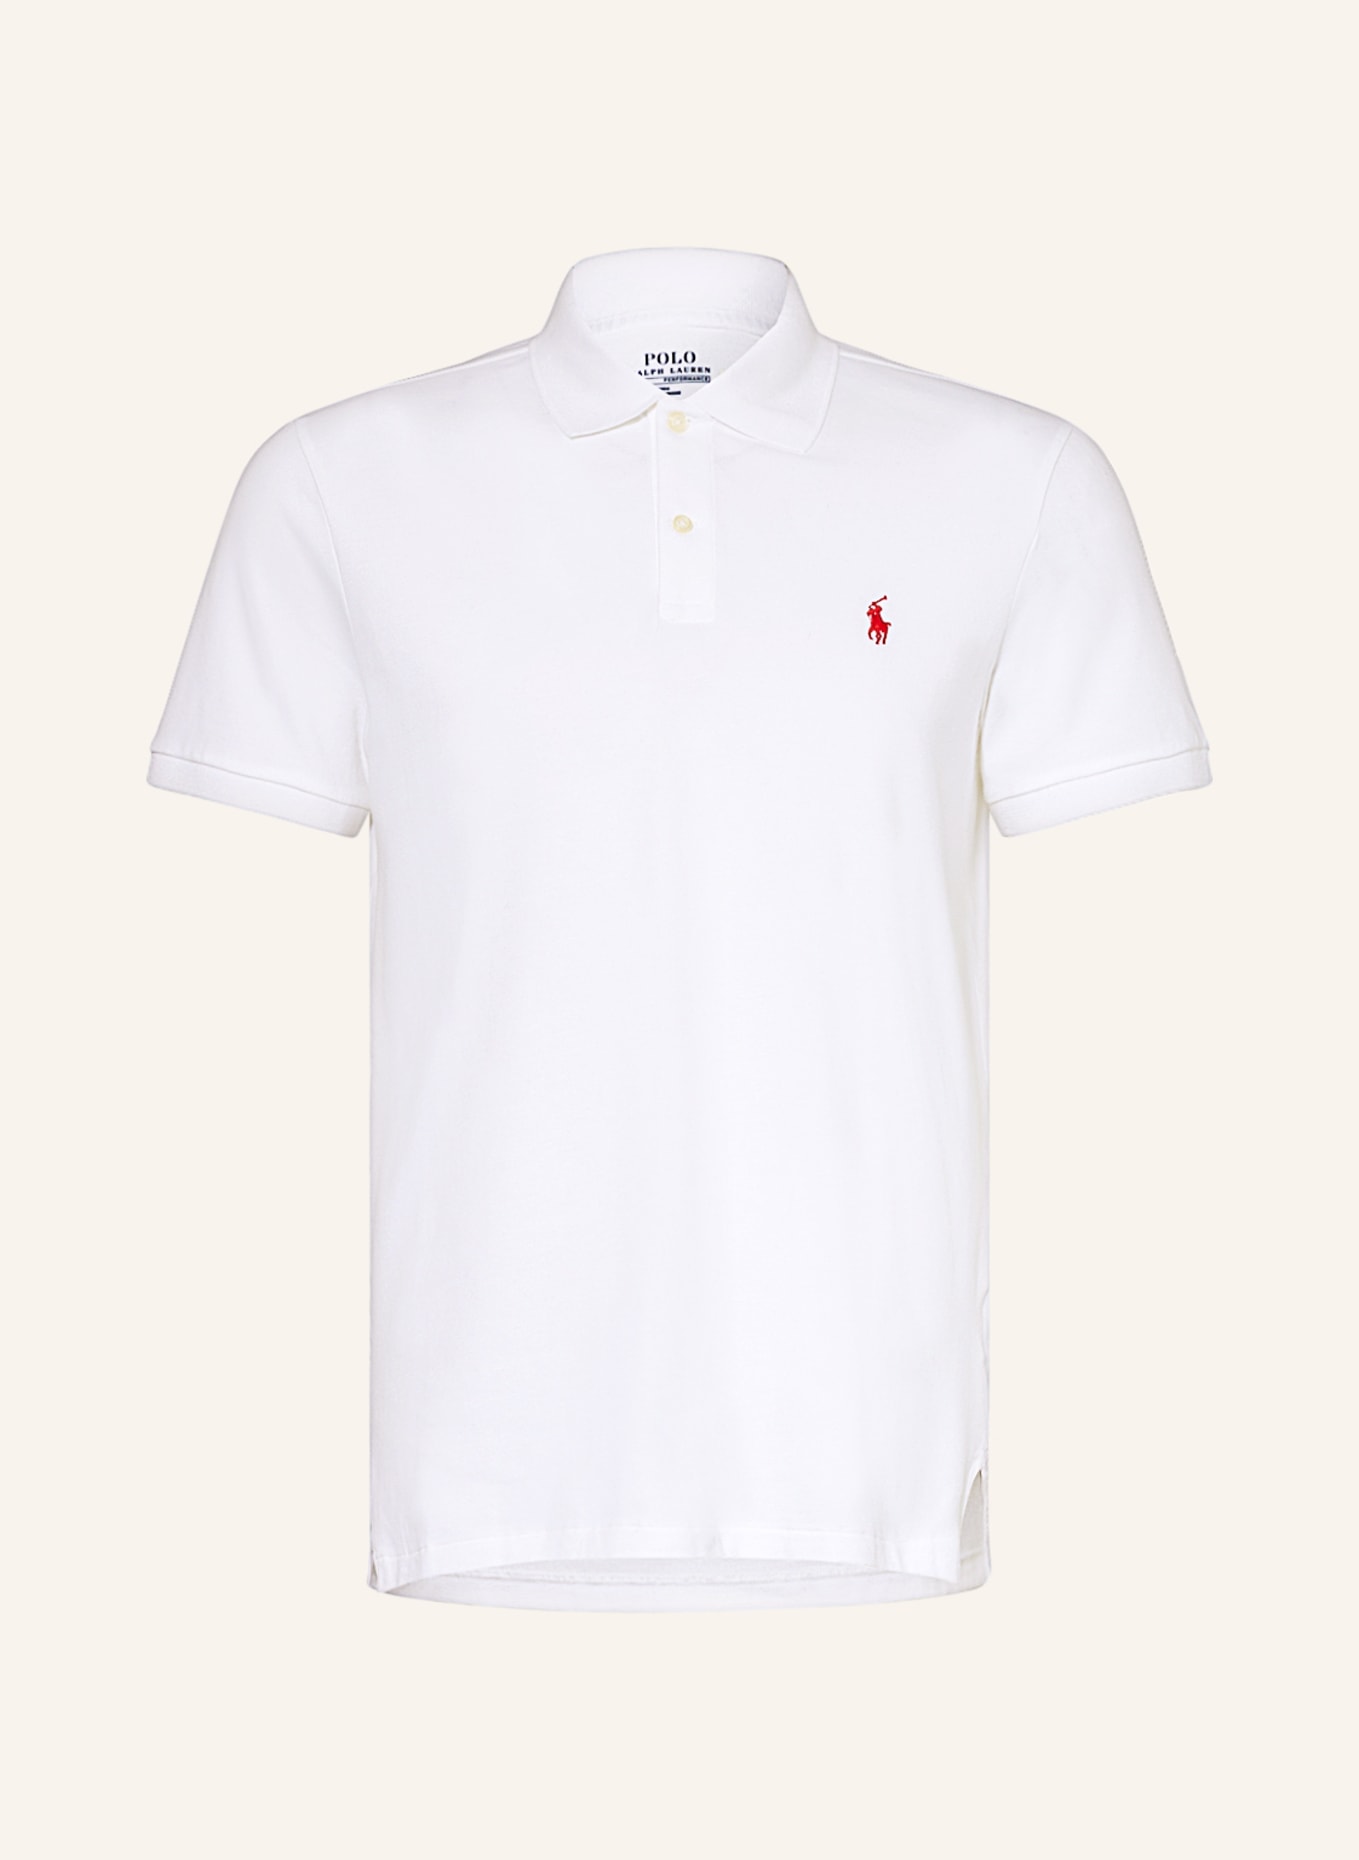 POLO GOLF RALPH LAUREN Piqué polo shirt, Color: WHITE (Image 1)